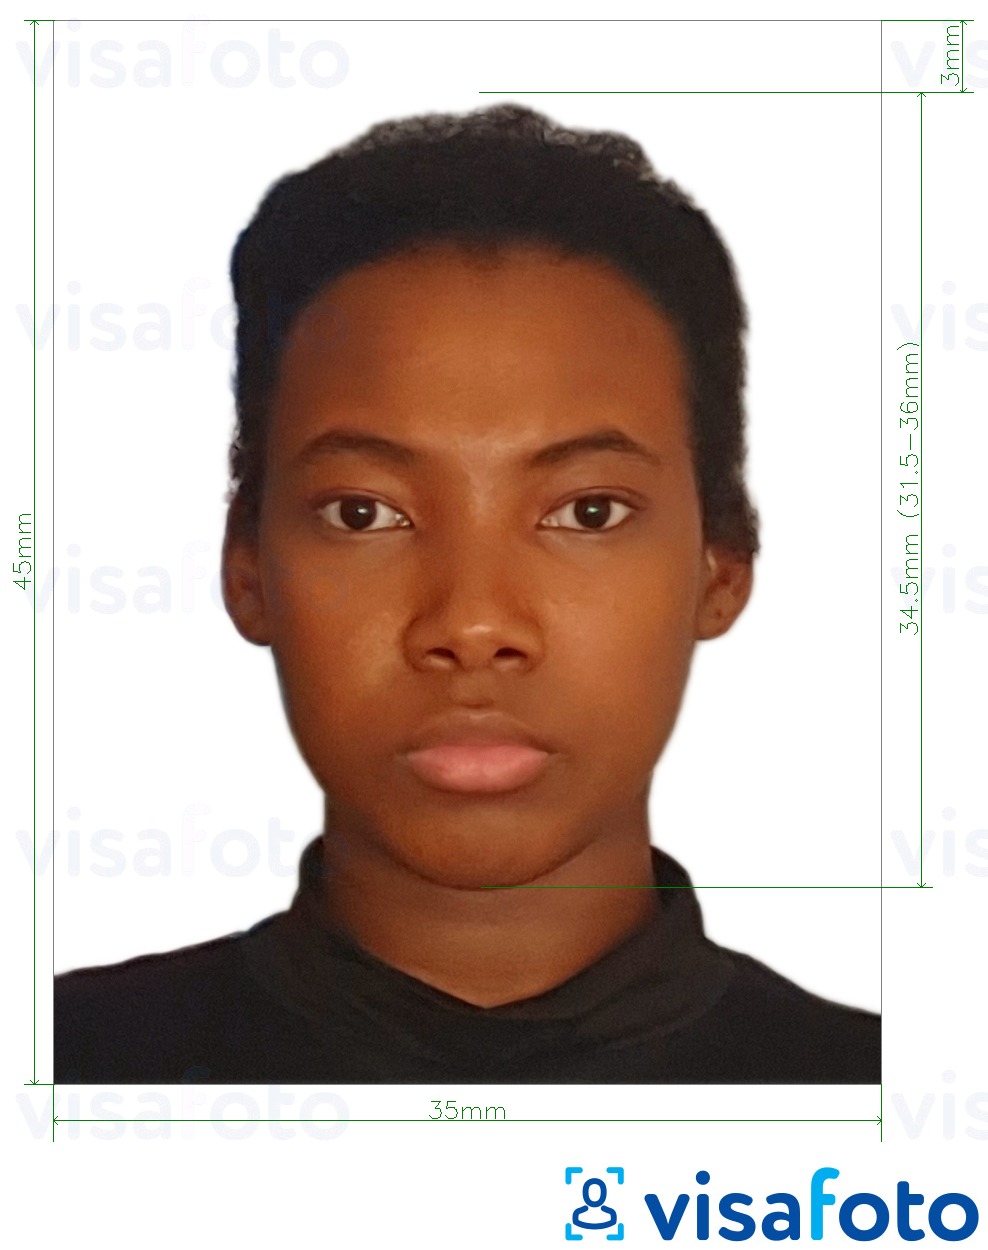 Przykład zdjęcia dla Paszport Malawi 4,5 x 3,5 cm (45 x 35 mm) z podaniem dokładnego rozmiaru.